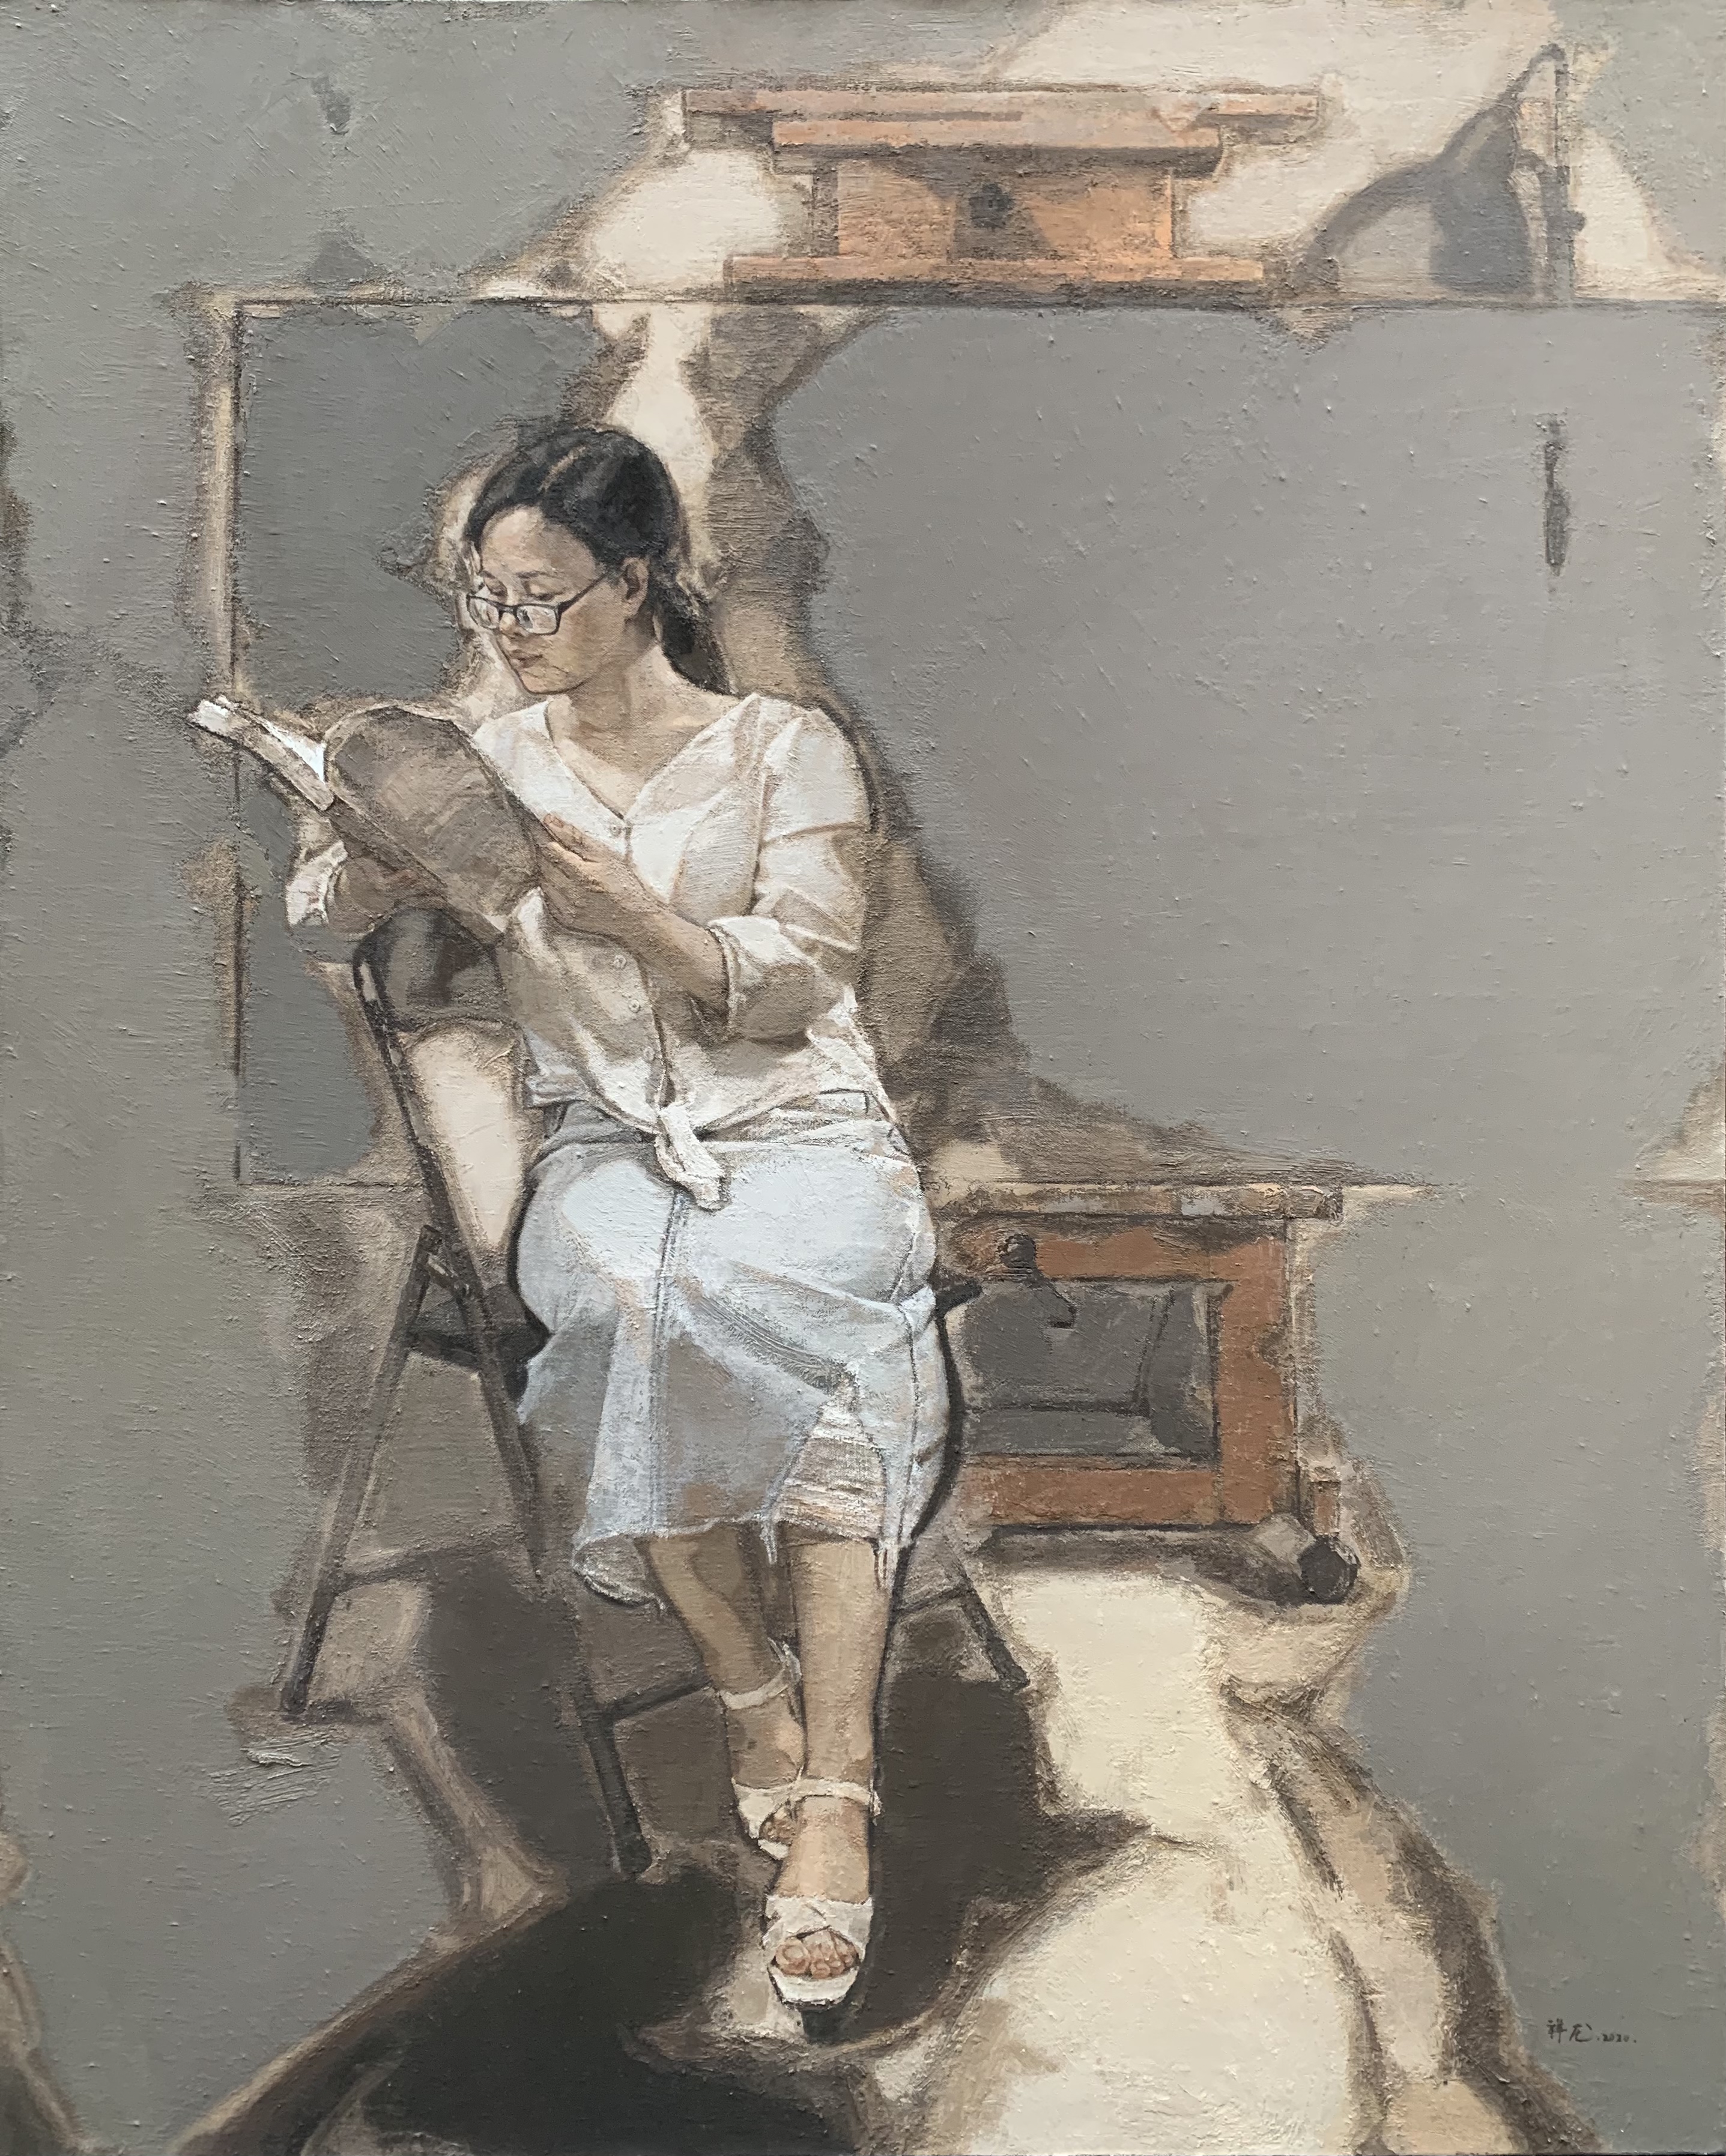 「艺术」画家画妻子——游祥龙油画作品《她》系列